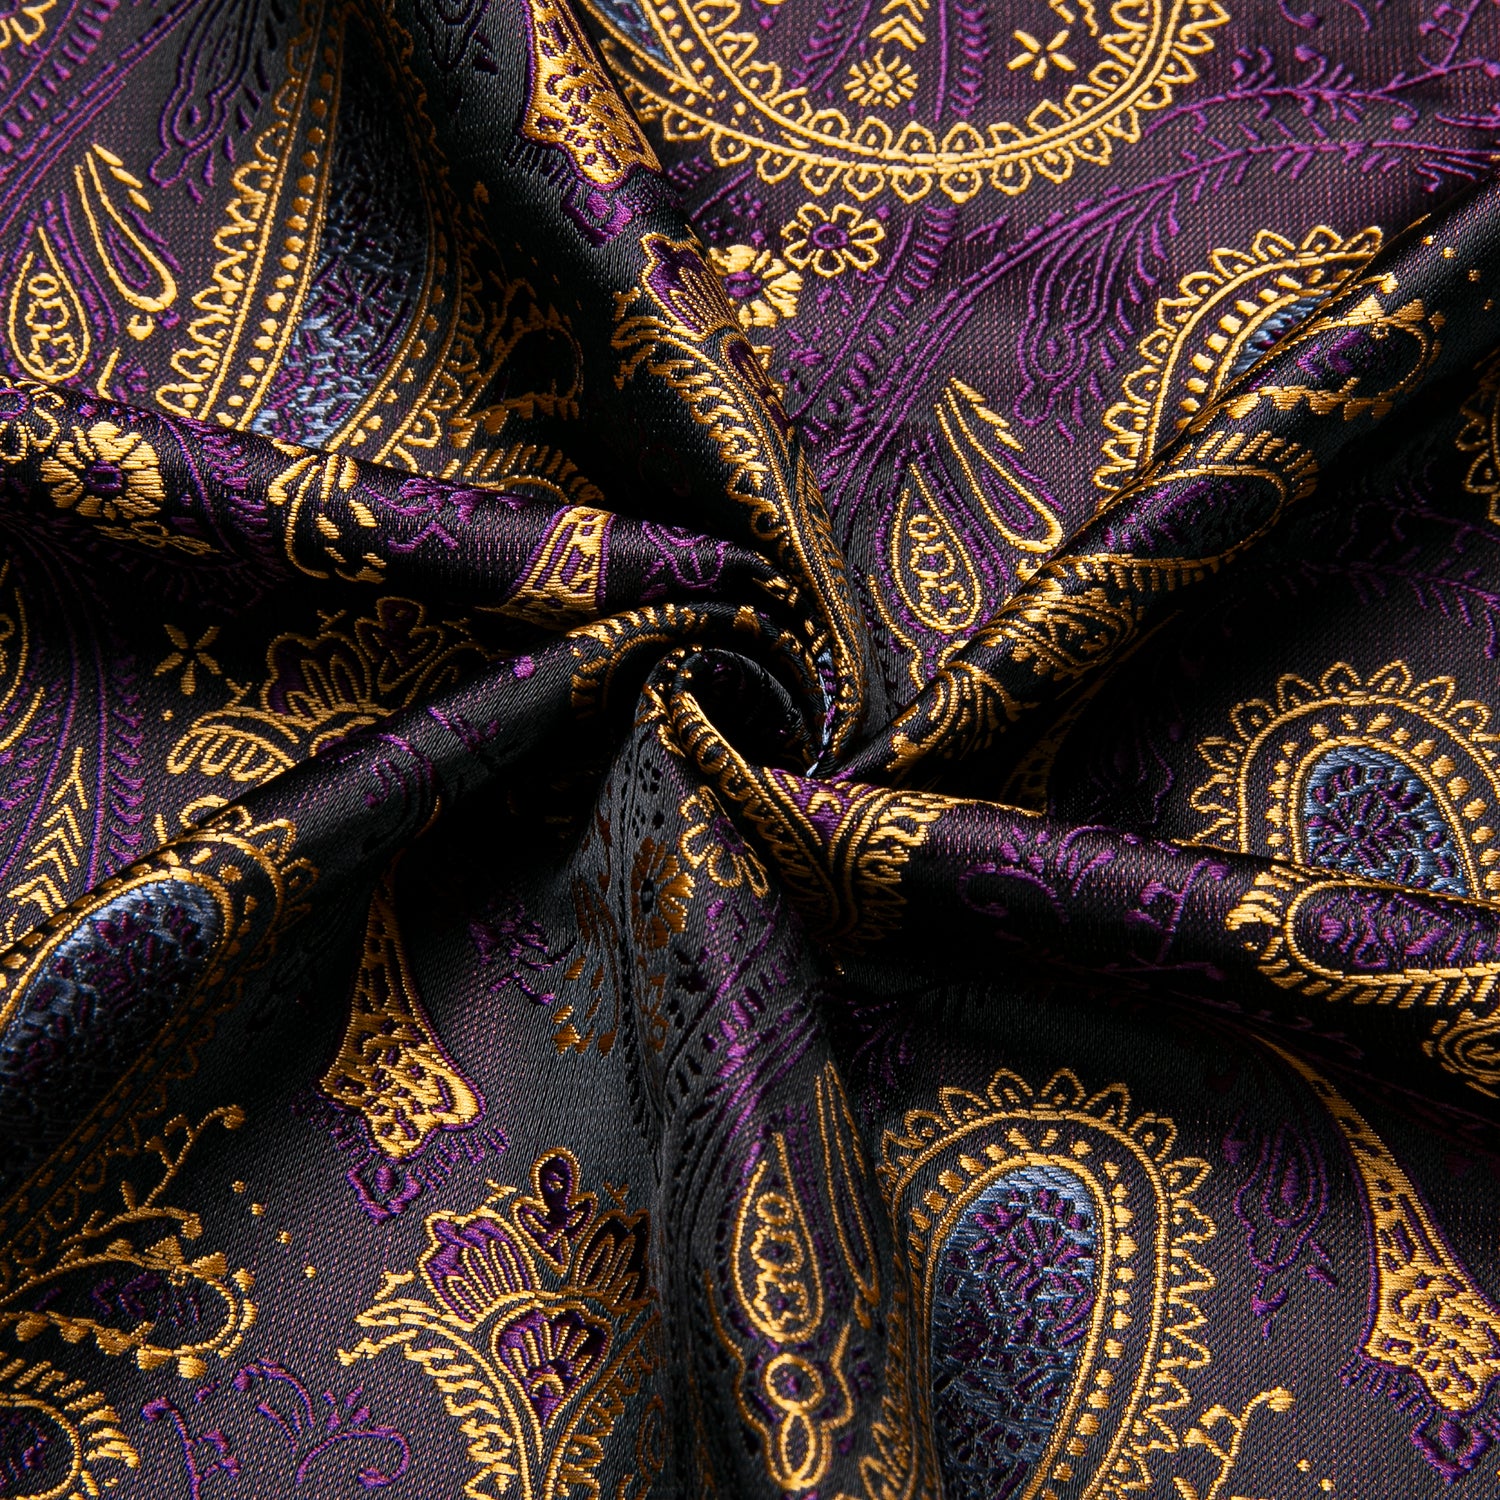 Golden Purple Paisley Silk Men's Short Sleeve Shirt